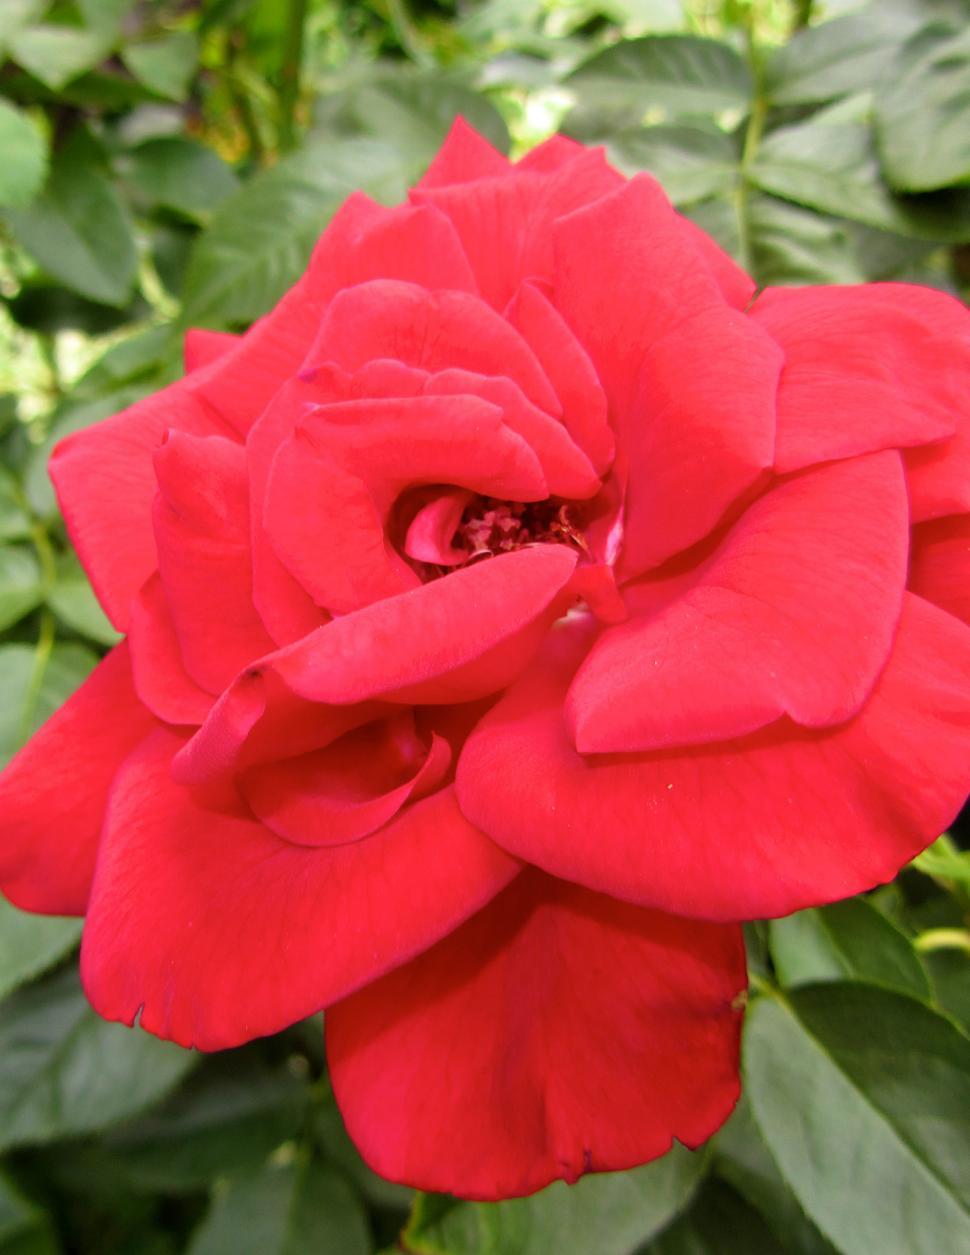 Free Image of Red Rose 